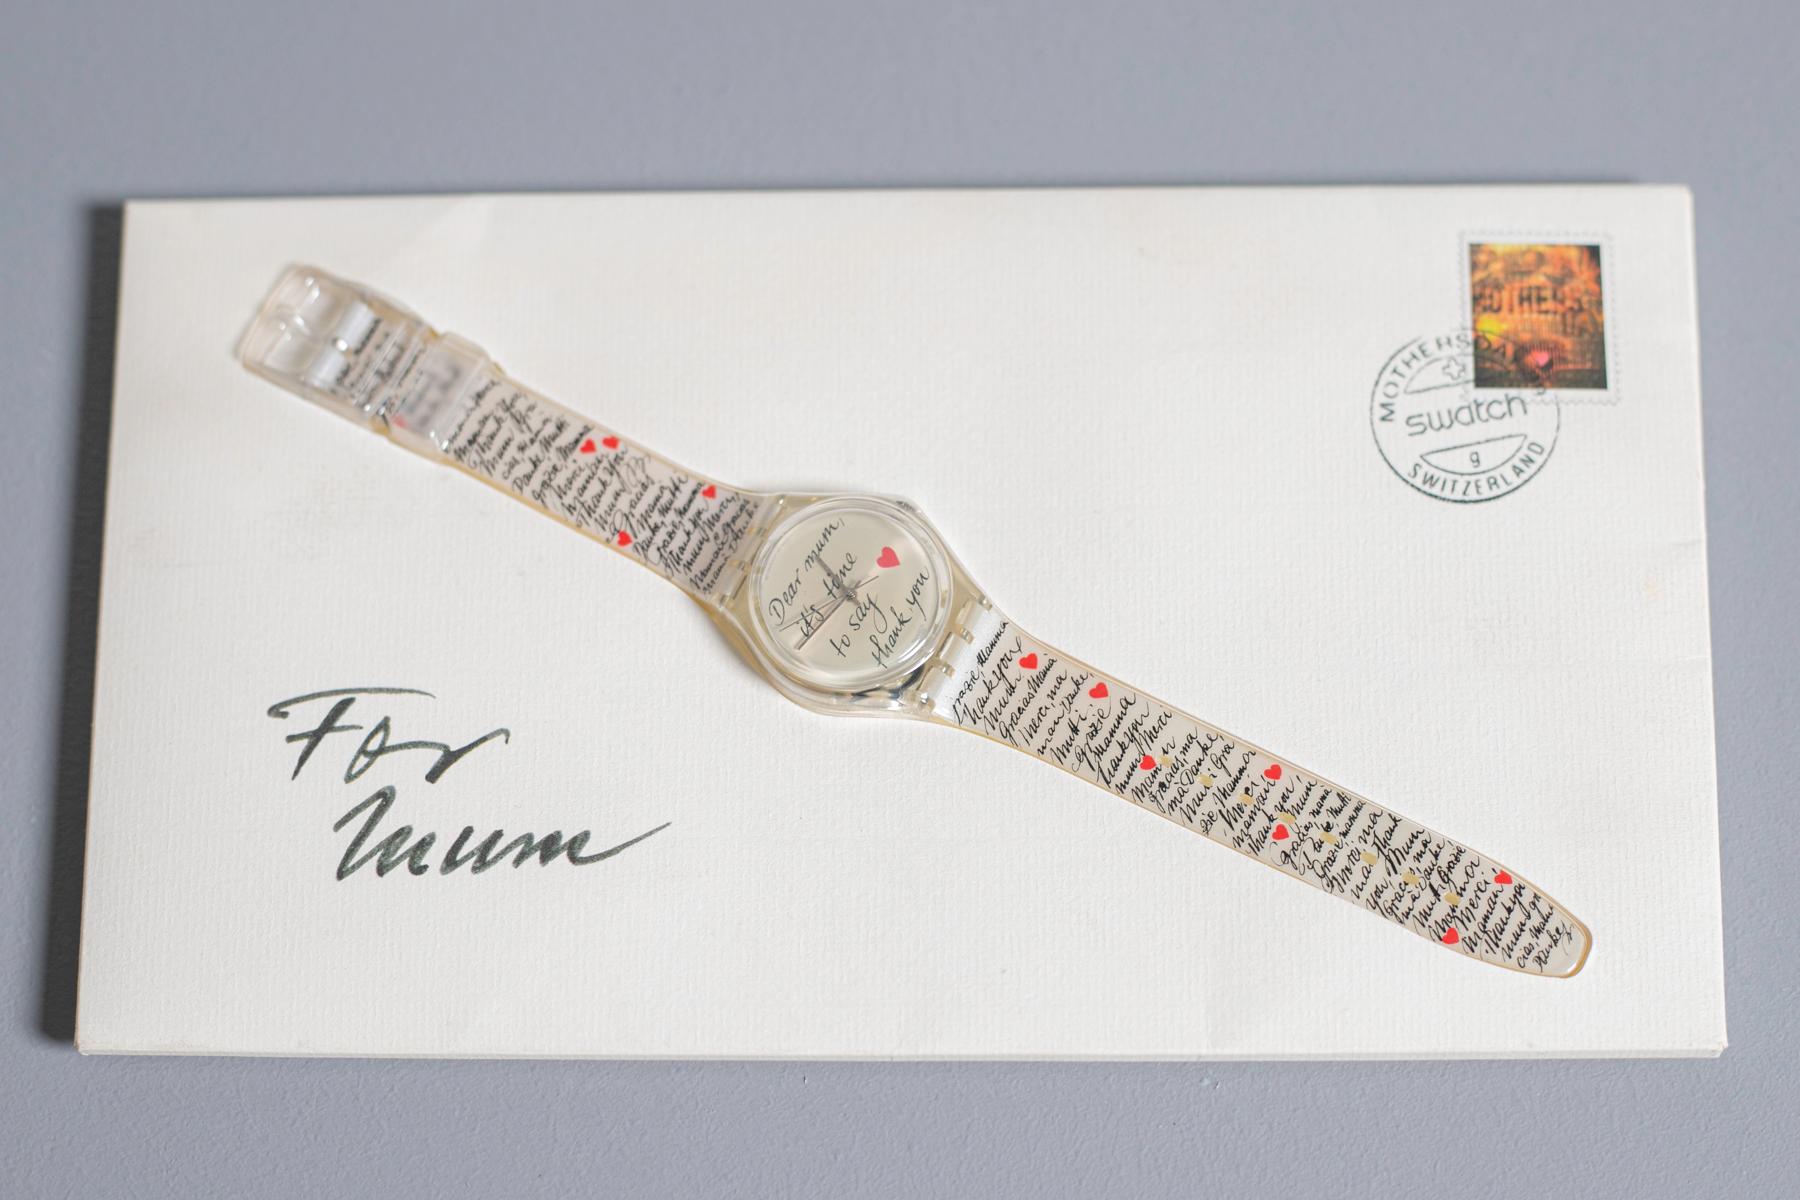 Lovely Swatch Dear Mum année 1999. Cette montre est destinée à représenter l'amour pour la personne la plus chère au monde, la mère. Sur le bracelet blanc figure le mot 